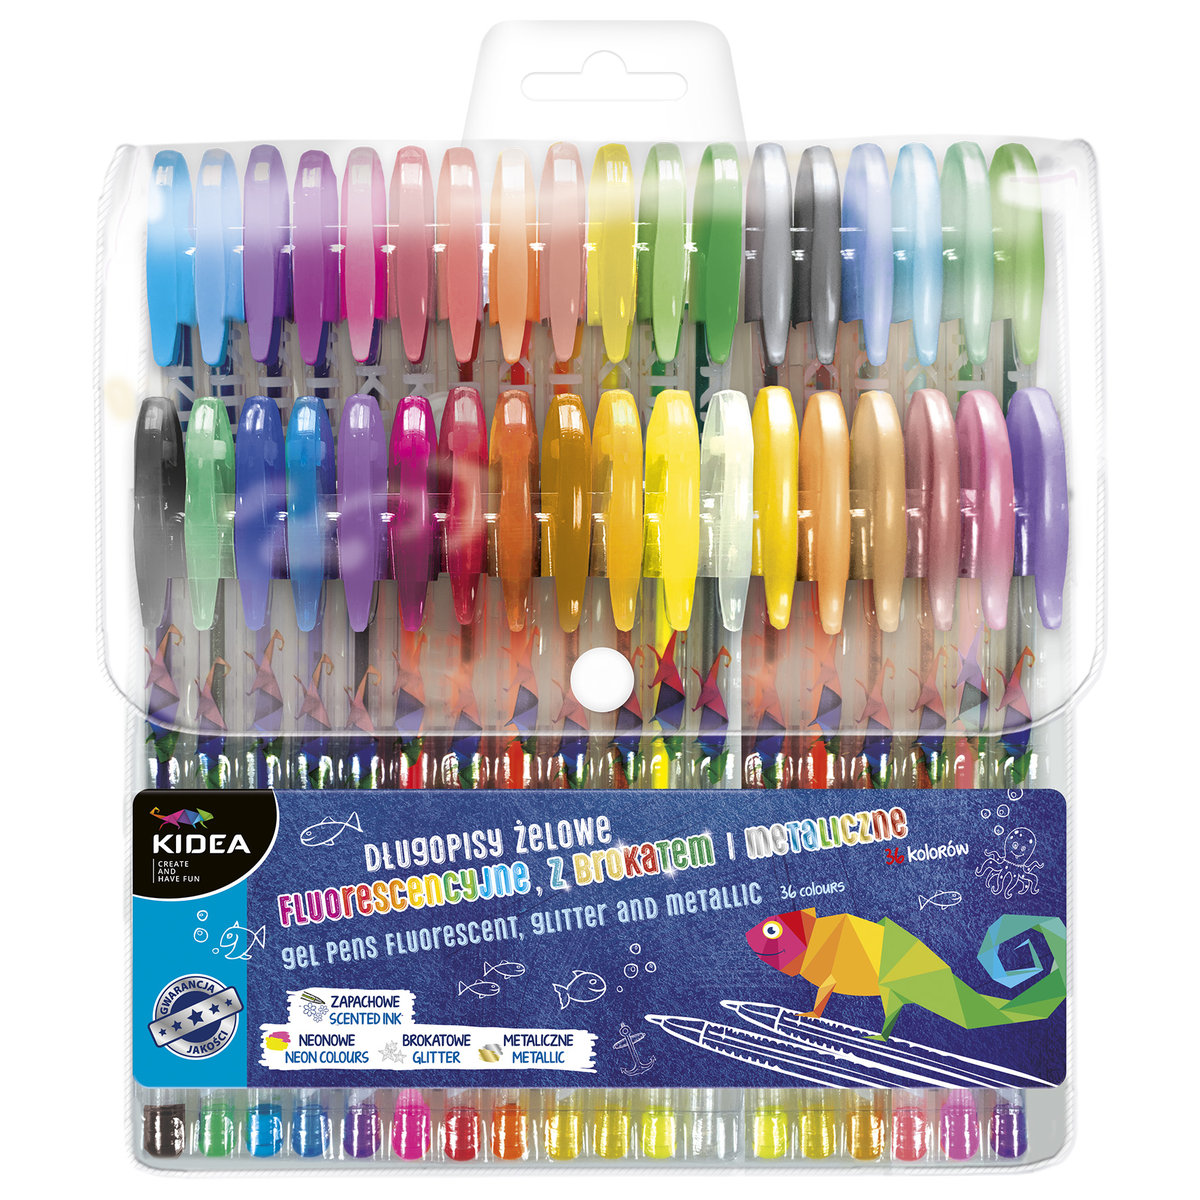 Фото - Ручка Kidea, Długopisy żelowe fluoroscencyjne z brokatem i metaliczne, 36 sztuk